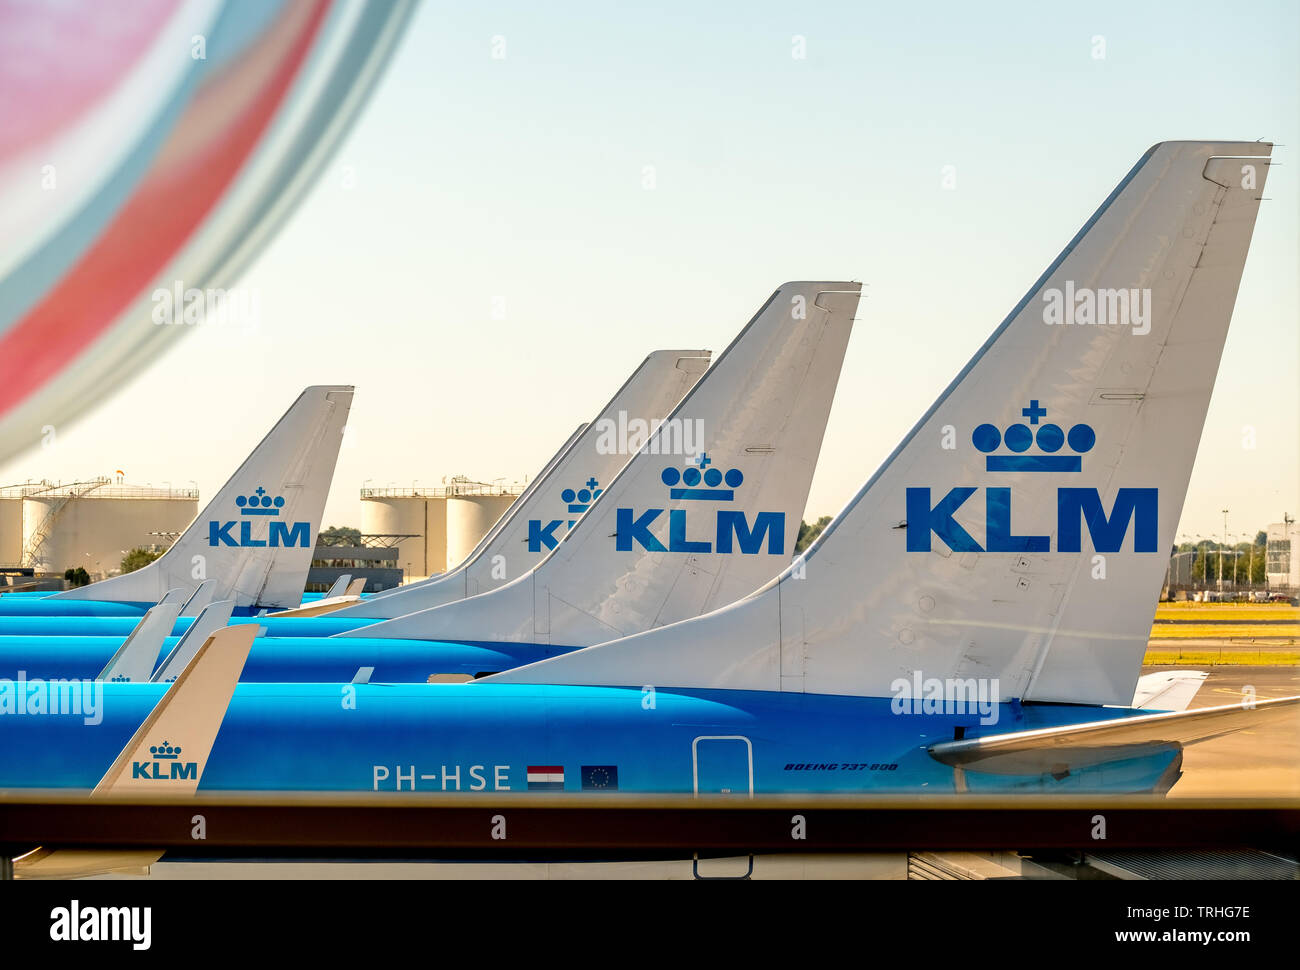 KLM höhenleitwerk am Flughafen Schiphol Amsterdam, Noord-Holland, Niederlande, Europa, Schiphol, NLD, Reisen, Tourismus, Reisen, Reiseziele, Sehenswürdigkeiten, Meer Stockfoto